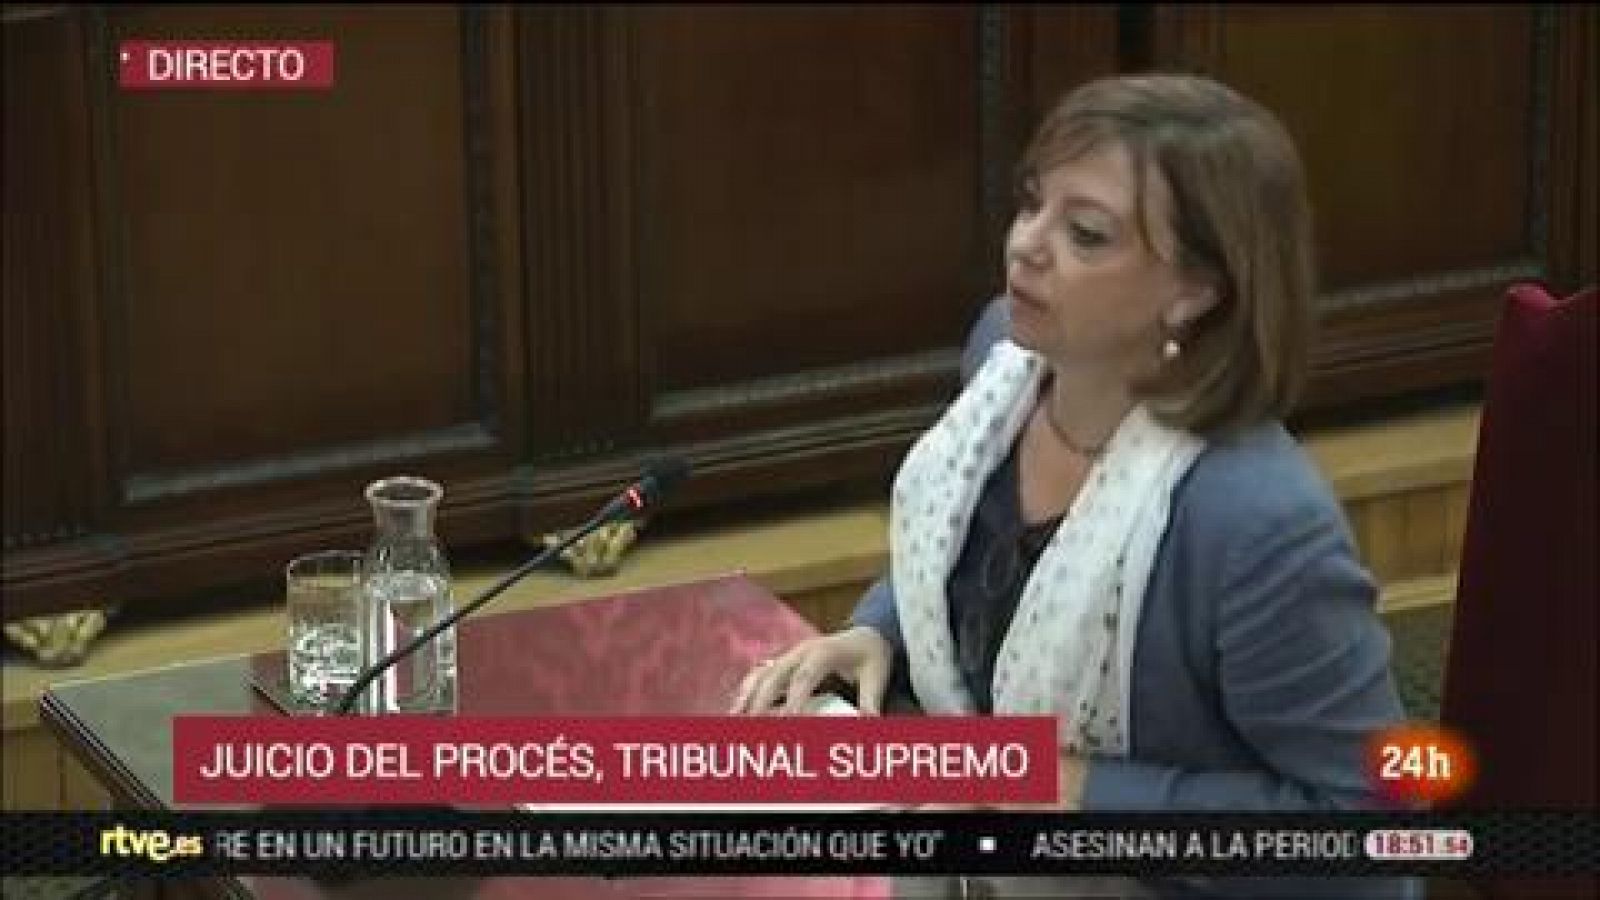 Juicio procés - Borràs asegura en su alegato final que que la Constitución reconoce la existencia de "voluntades nacionales" como la catalana - RTVE.es